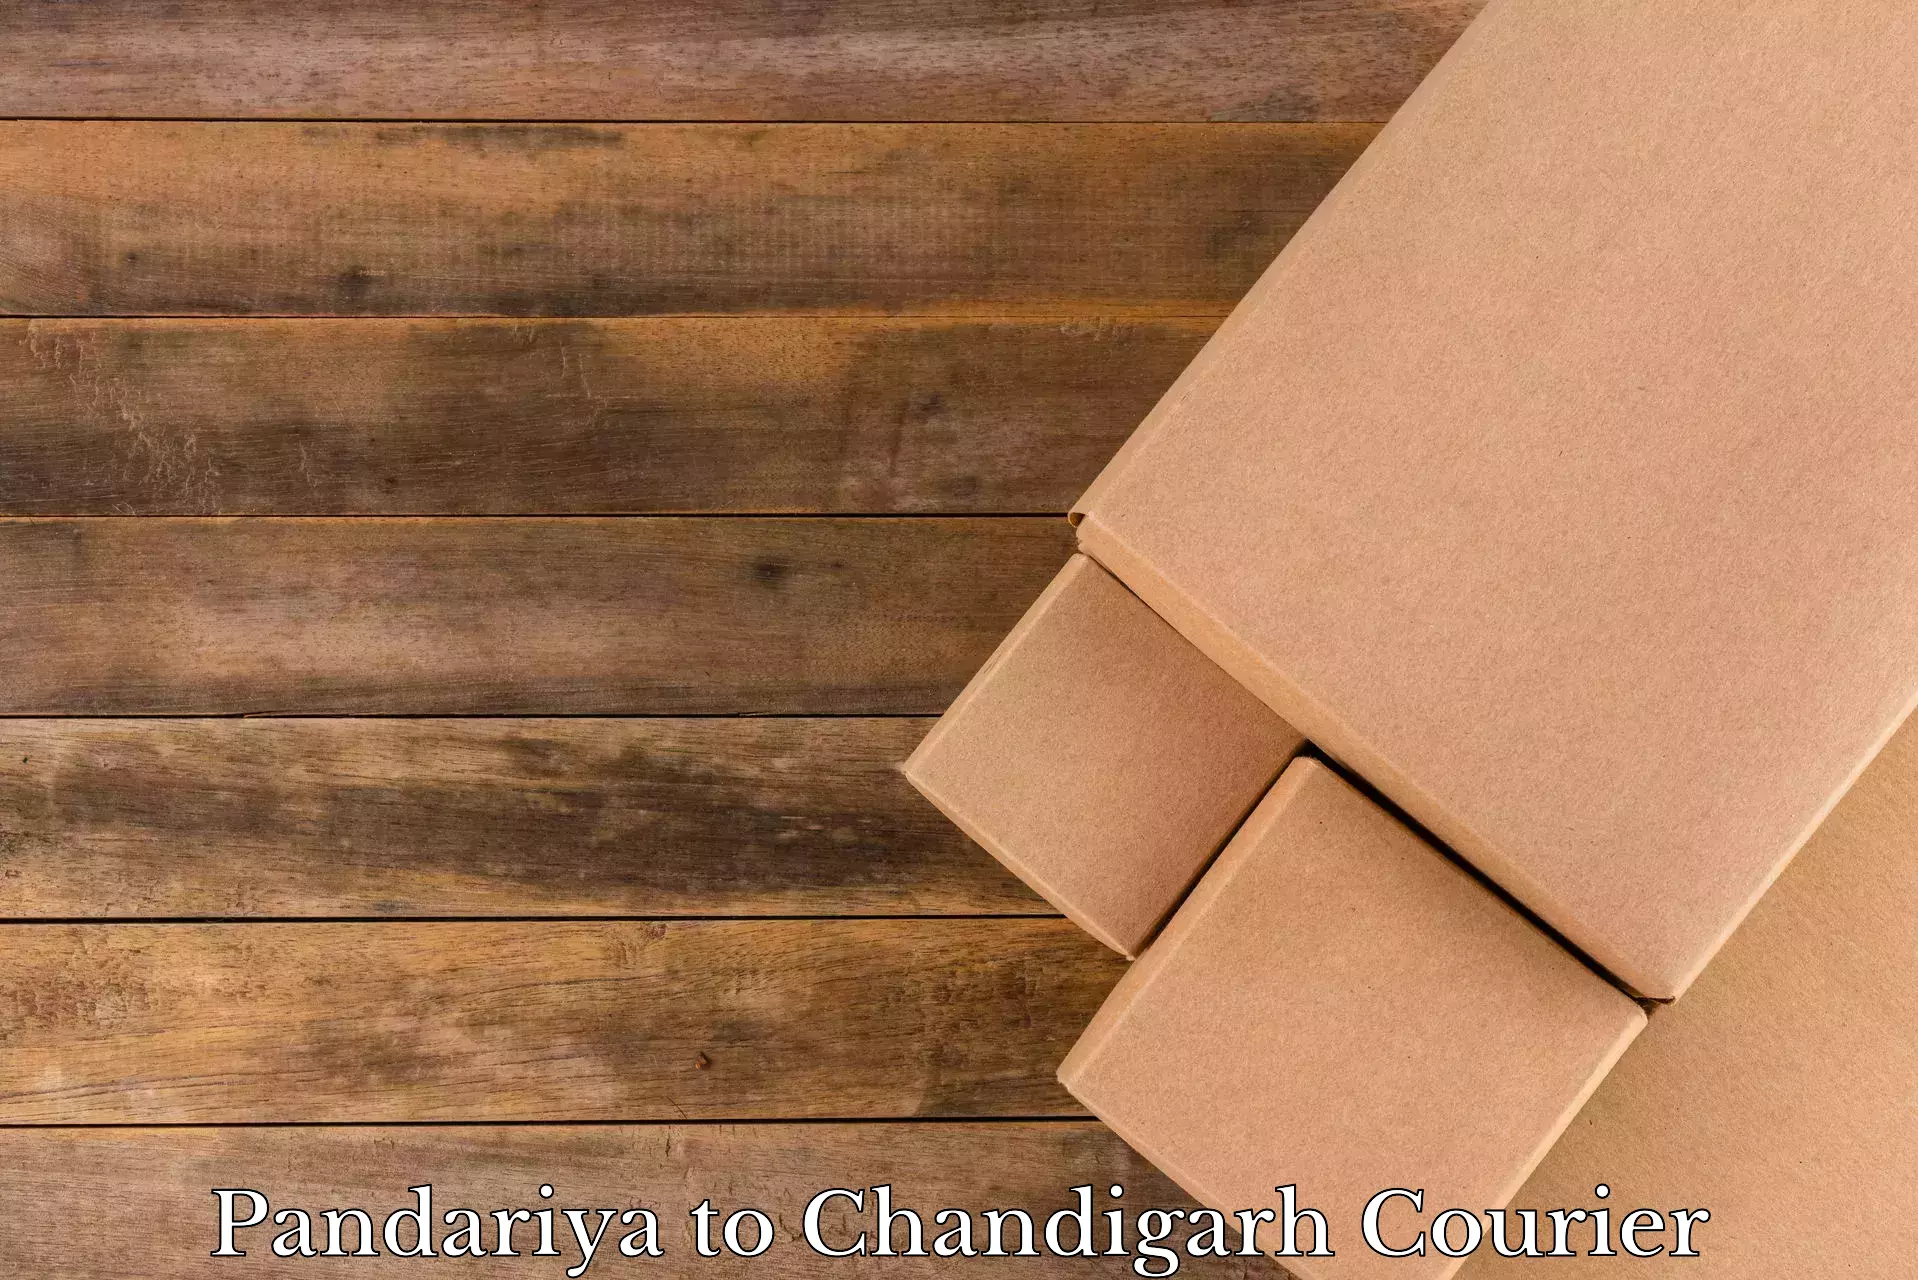 Home moving experts Pandariya to Chandigarh